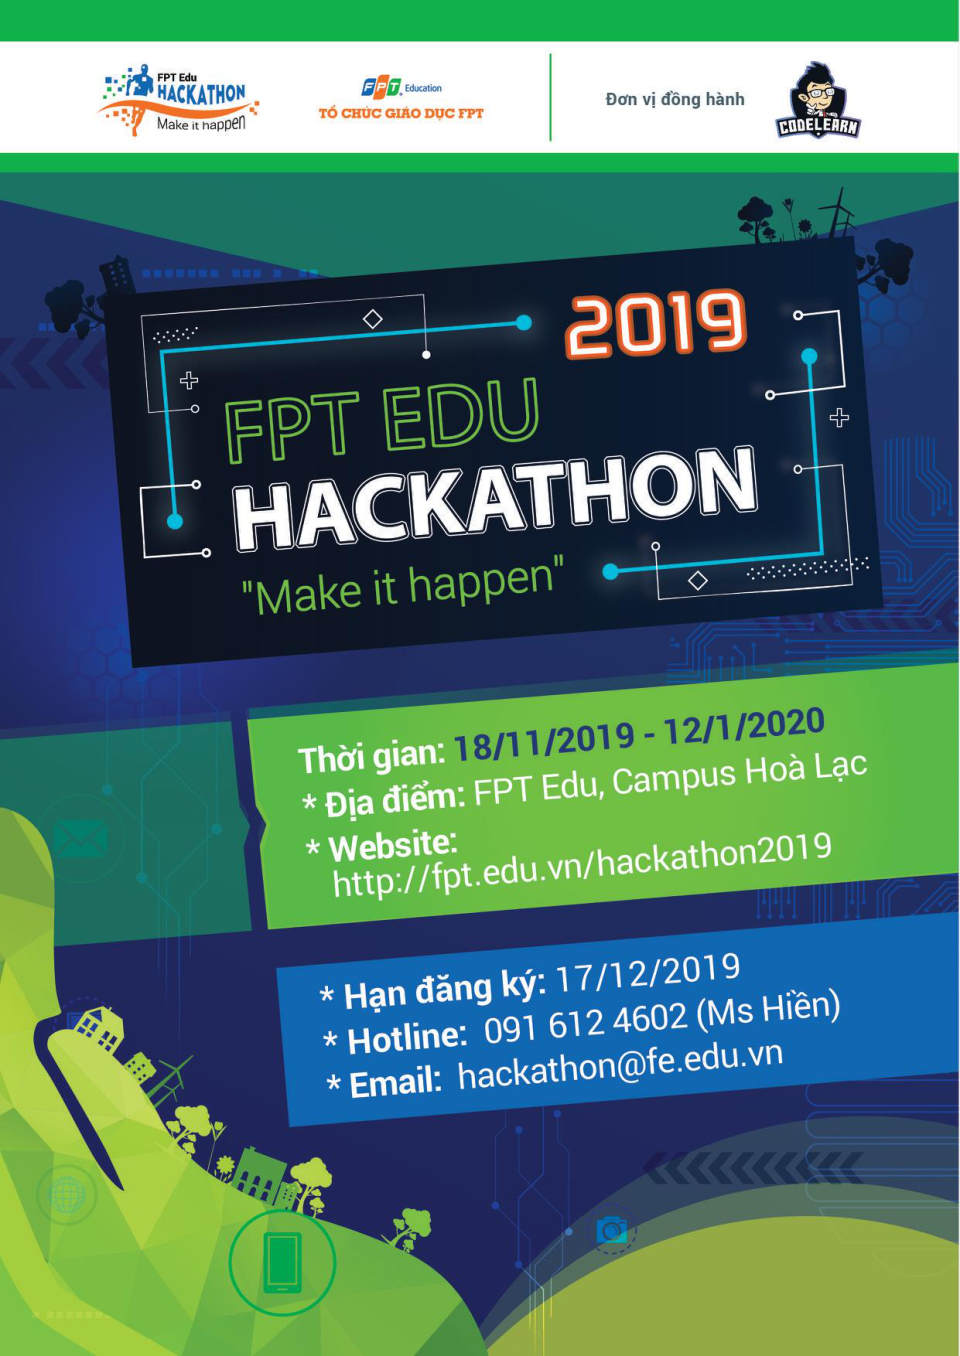 Tại FPT Edu Hackathon, các đội thi sẽ học cùng trải nghiệm lập trình hoàn thiện một sản phẩm công nghệ theo chủ đề năm nay là bảo vệ môi trường